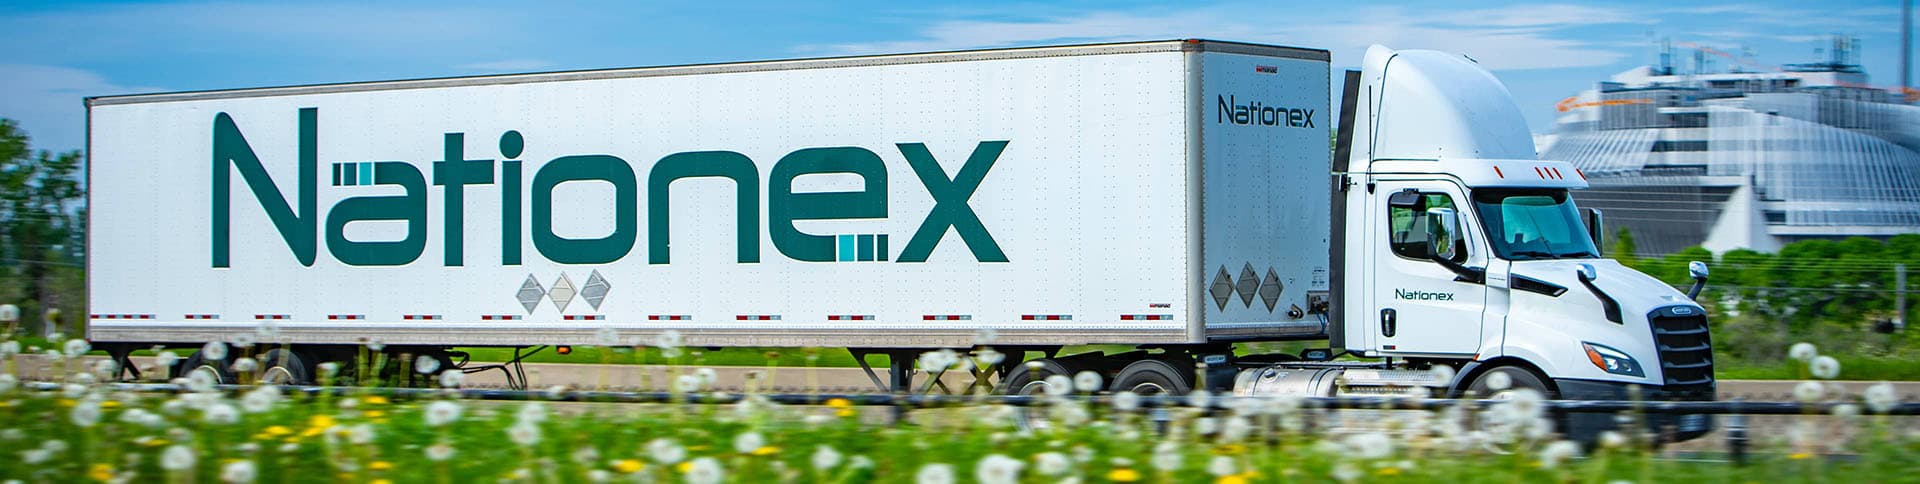 Nationex Truck